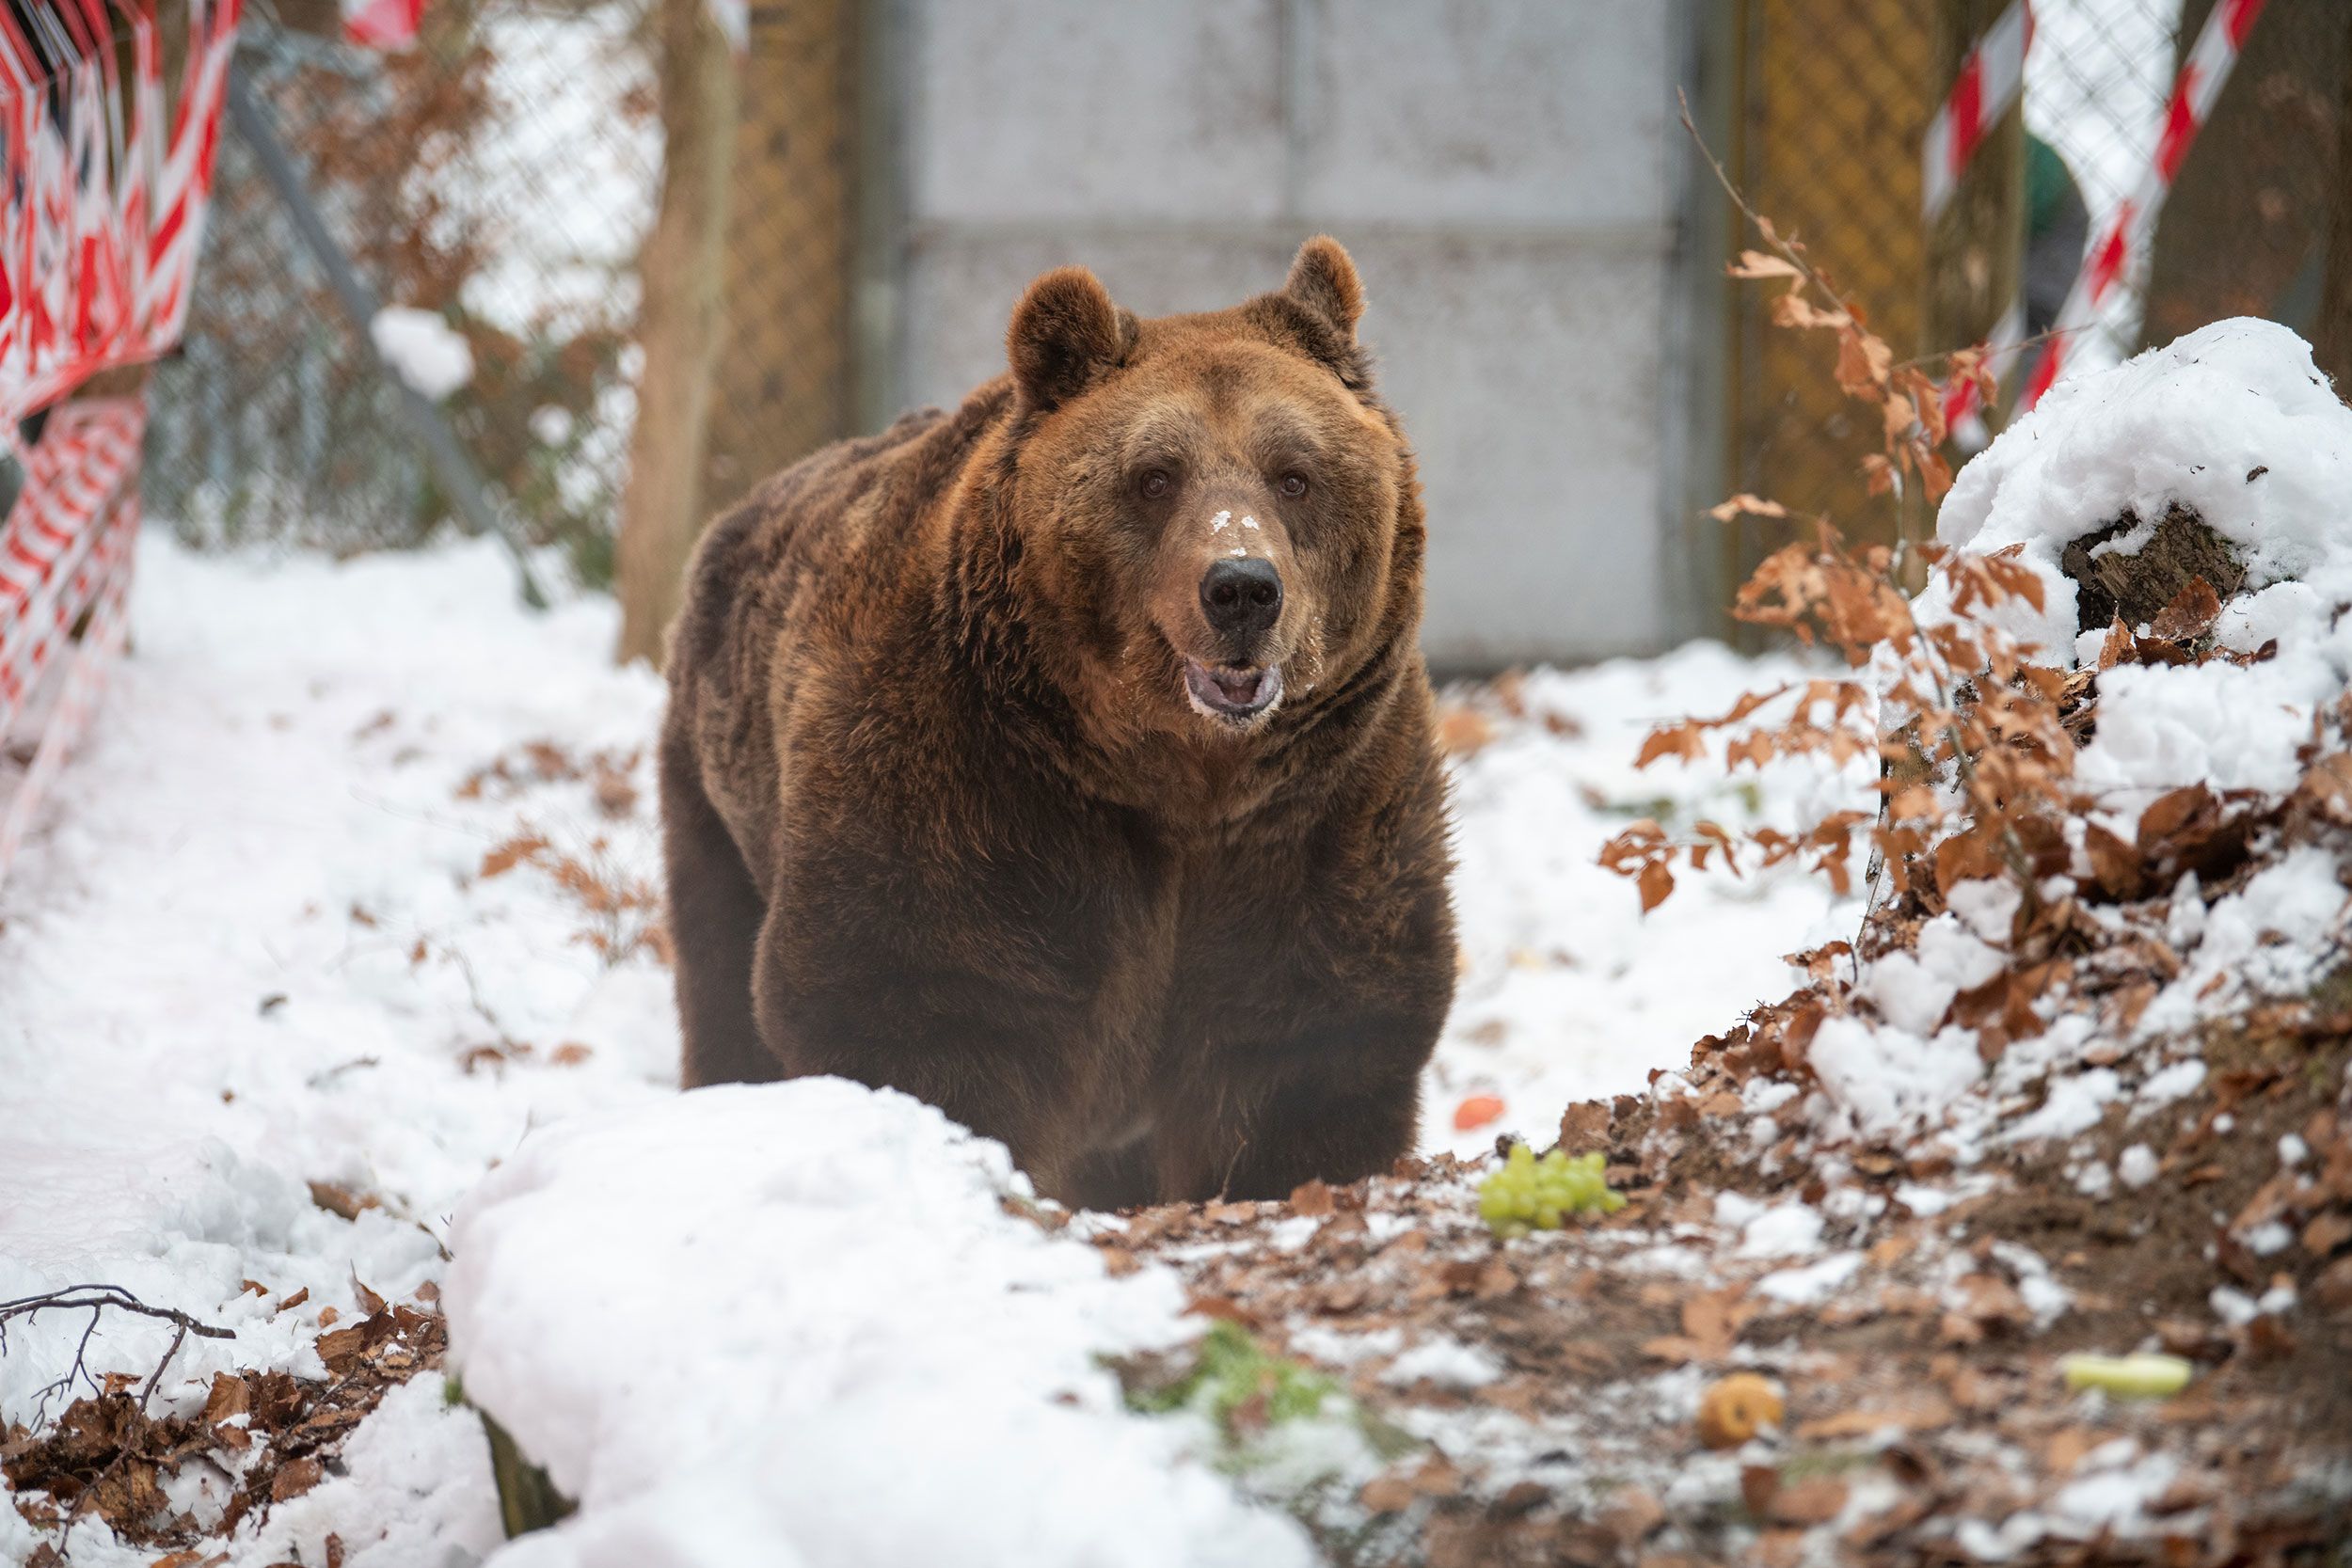 Albania's last 'restaurant bear' is finally at a sanctuary | CNN